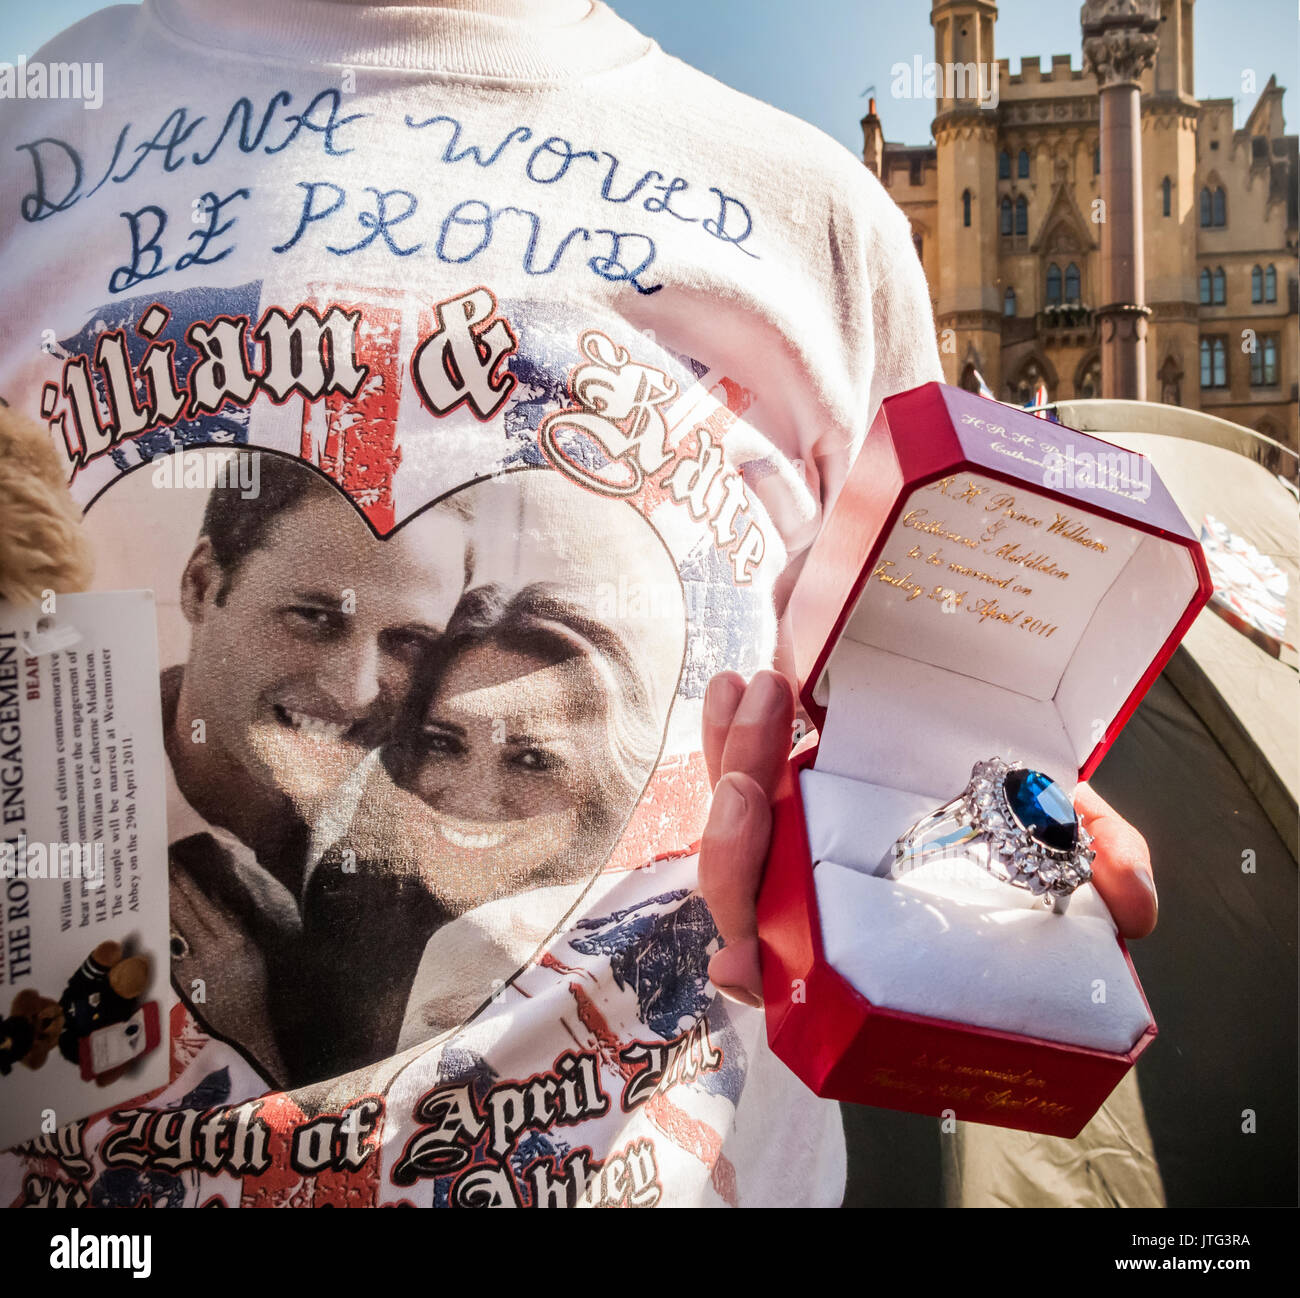 Eine königliche Fan vor der Westminster Abbey in London zeigt eine Replik von Kate Middleton's Engagement Ring zwei Tage vor der königlichen Hochzeit. Stockfoto